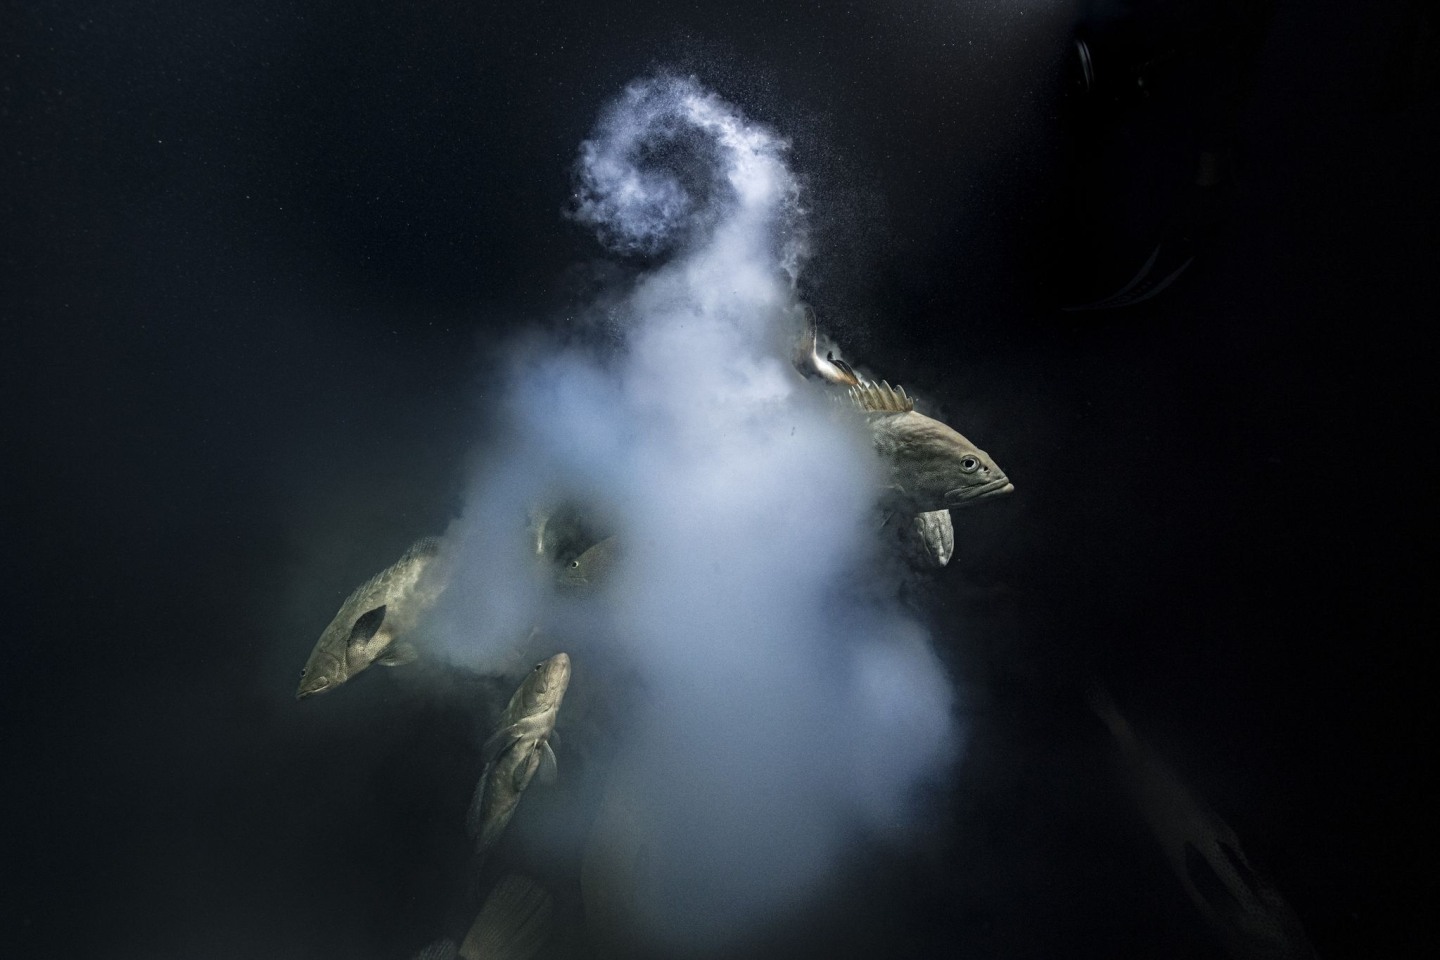 Bestes Wildtierfoto: Ein Trio getarnter Zackenbarsche wird beim Verlassen einer milchigen Wolke von Eiern und Spermien gezeigt.